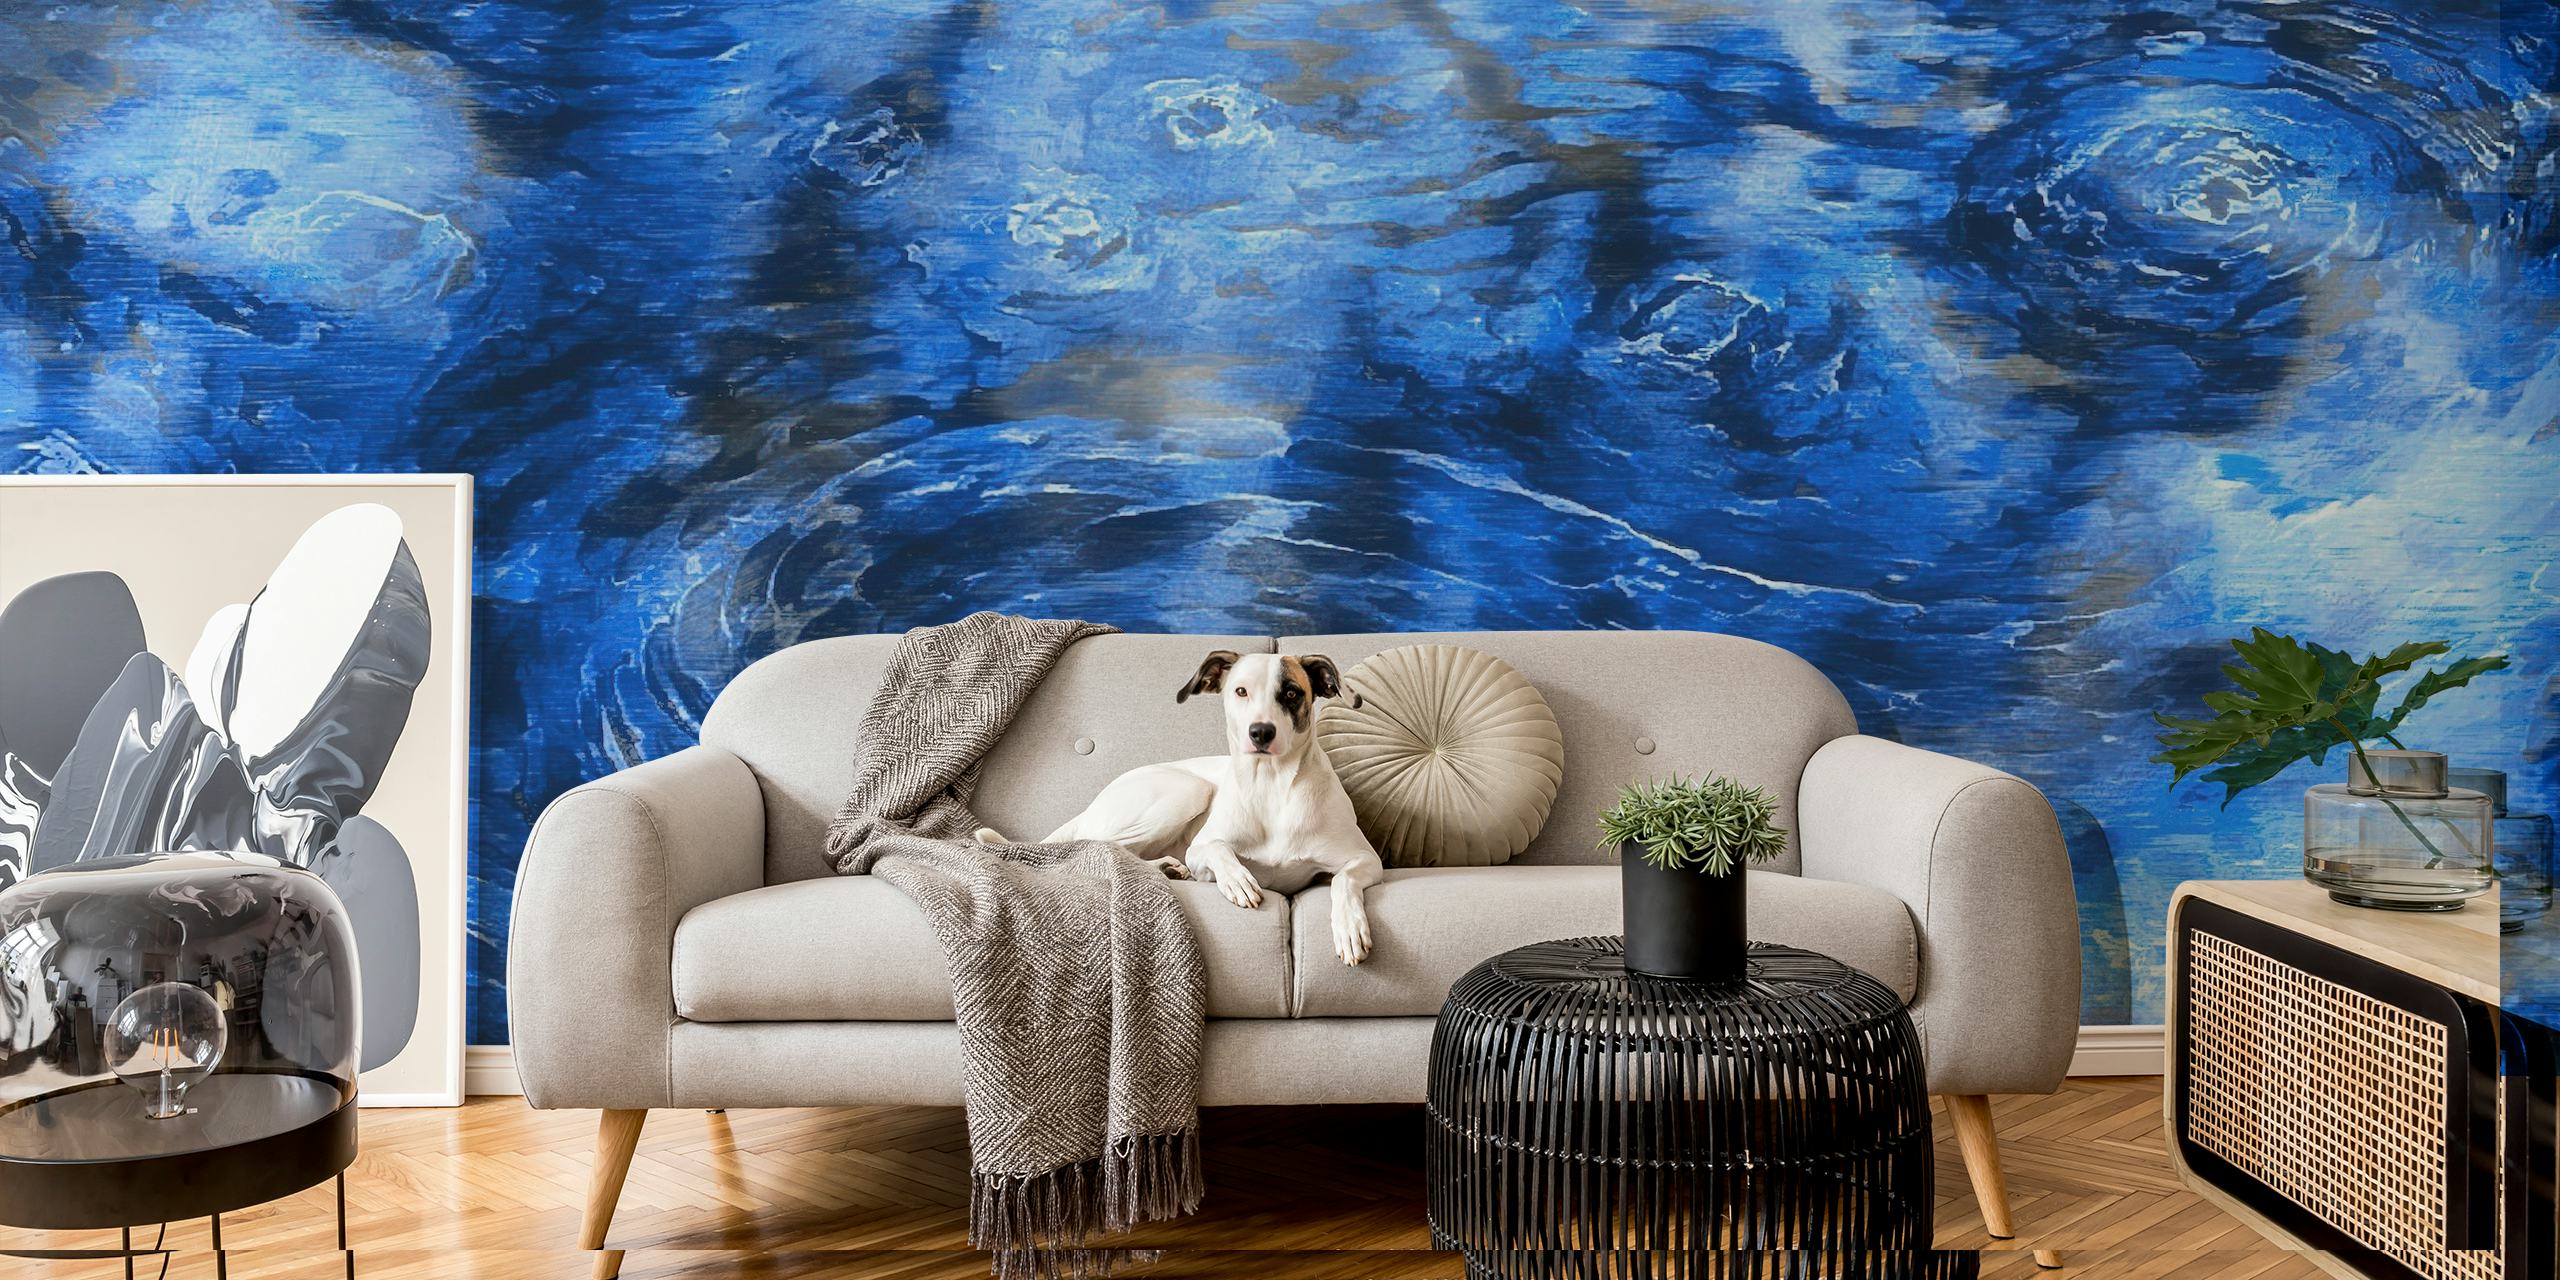 Impressionistinen Van Gogh Clouds -seinämaalaus pyörteillä sinivalkoisilla kuvioilla